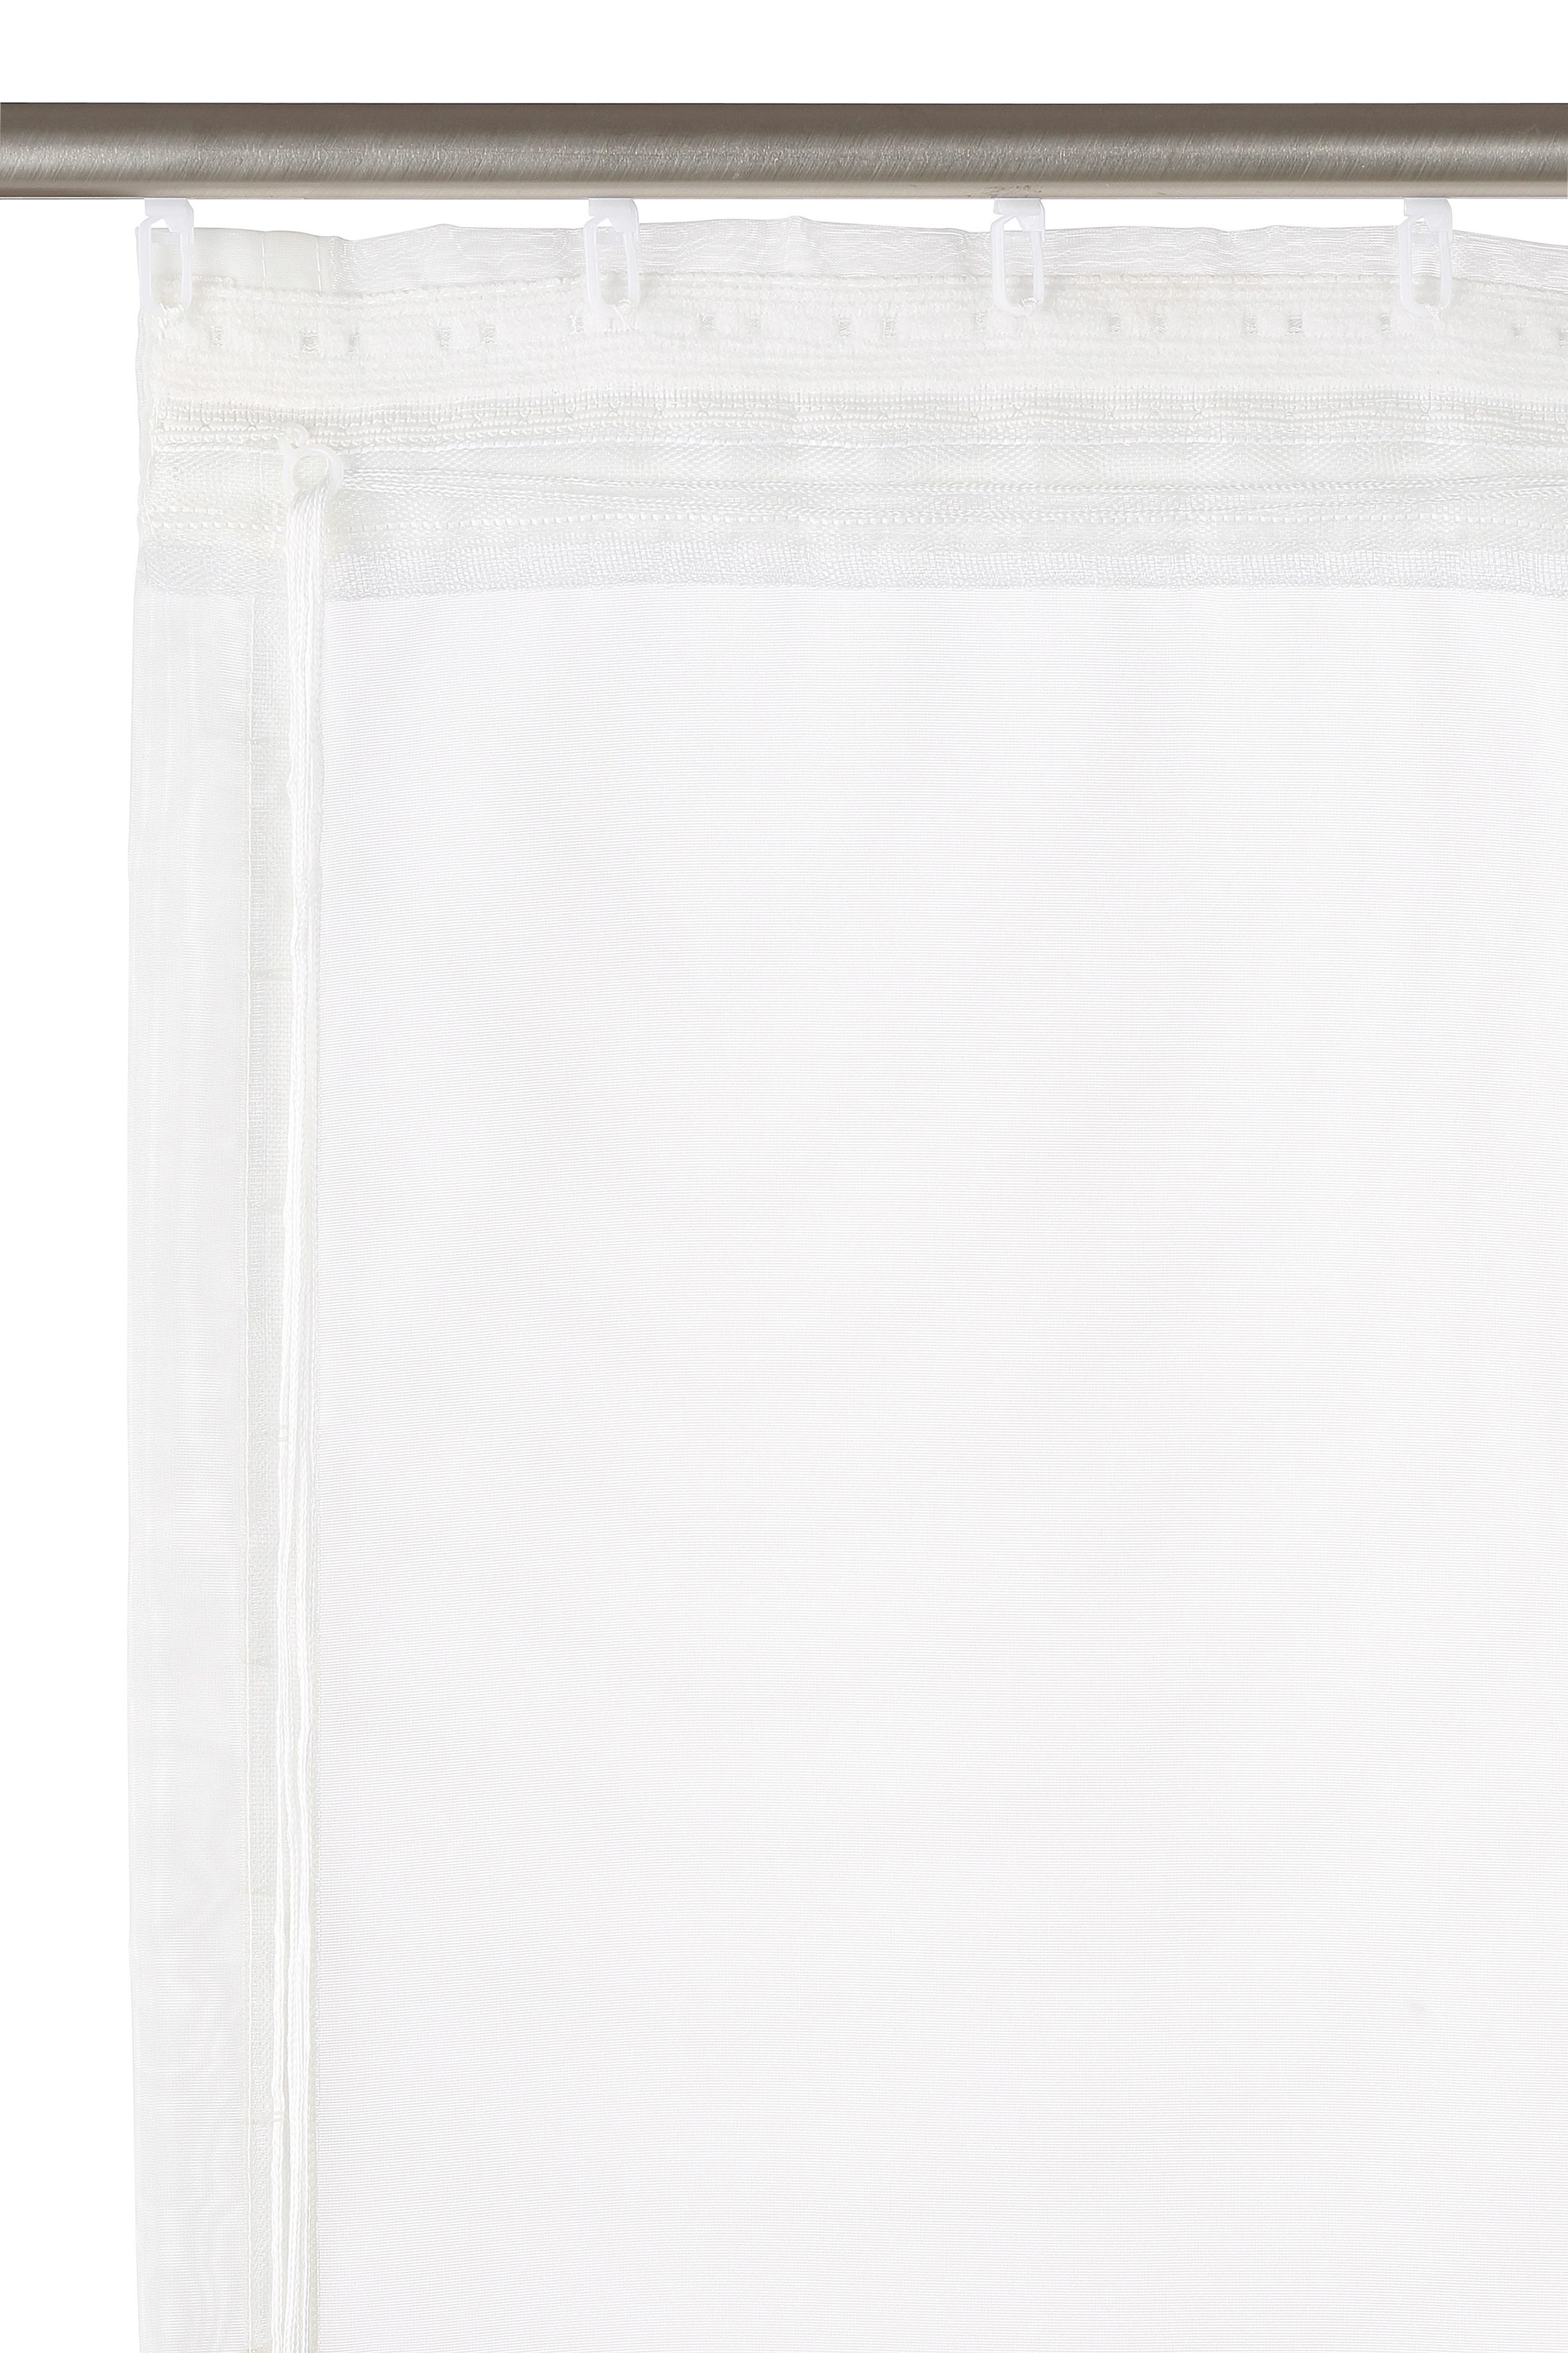 my home Raffrollo »Sorel«, mit bestellen und bequem Bestickt, Polyester schnell Transparent, Klettband